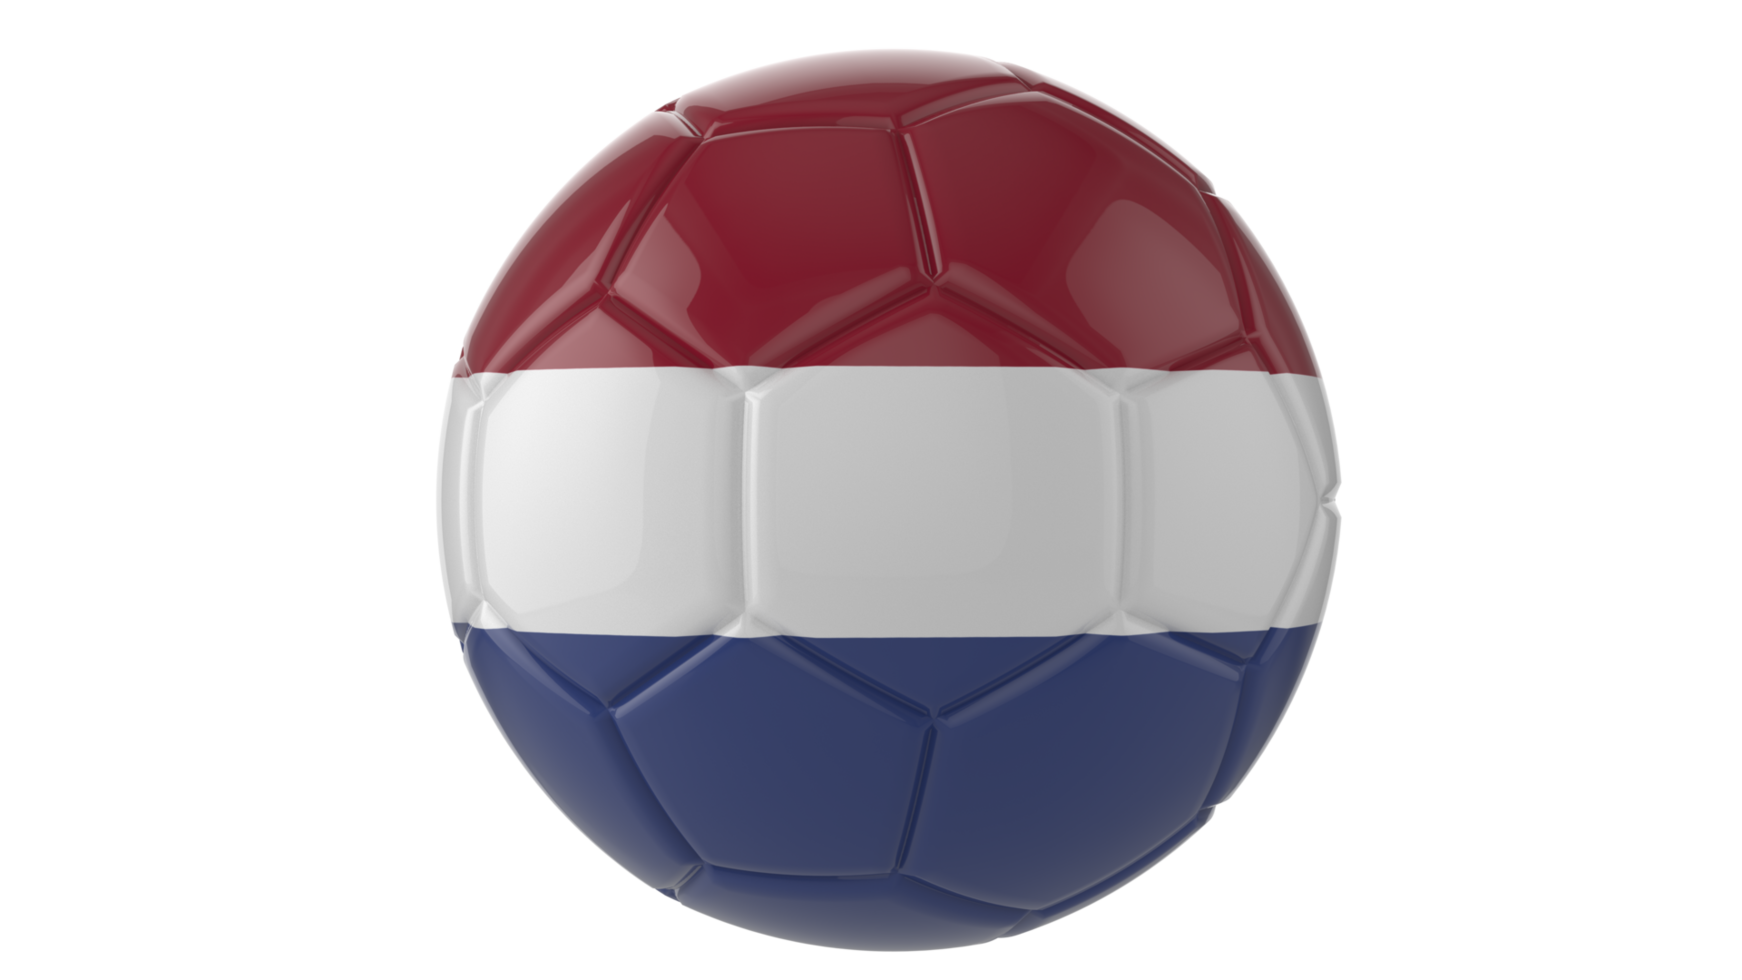 Balón de fútbol realista en 3d con la bandera de países bajos aislado sobre fondo png transparente